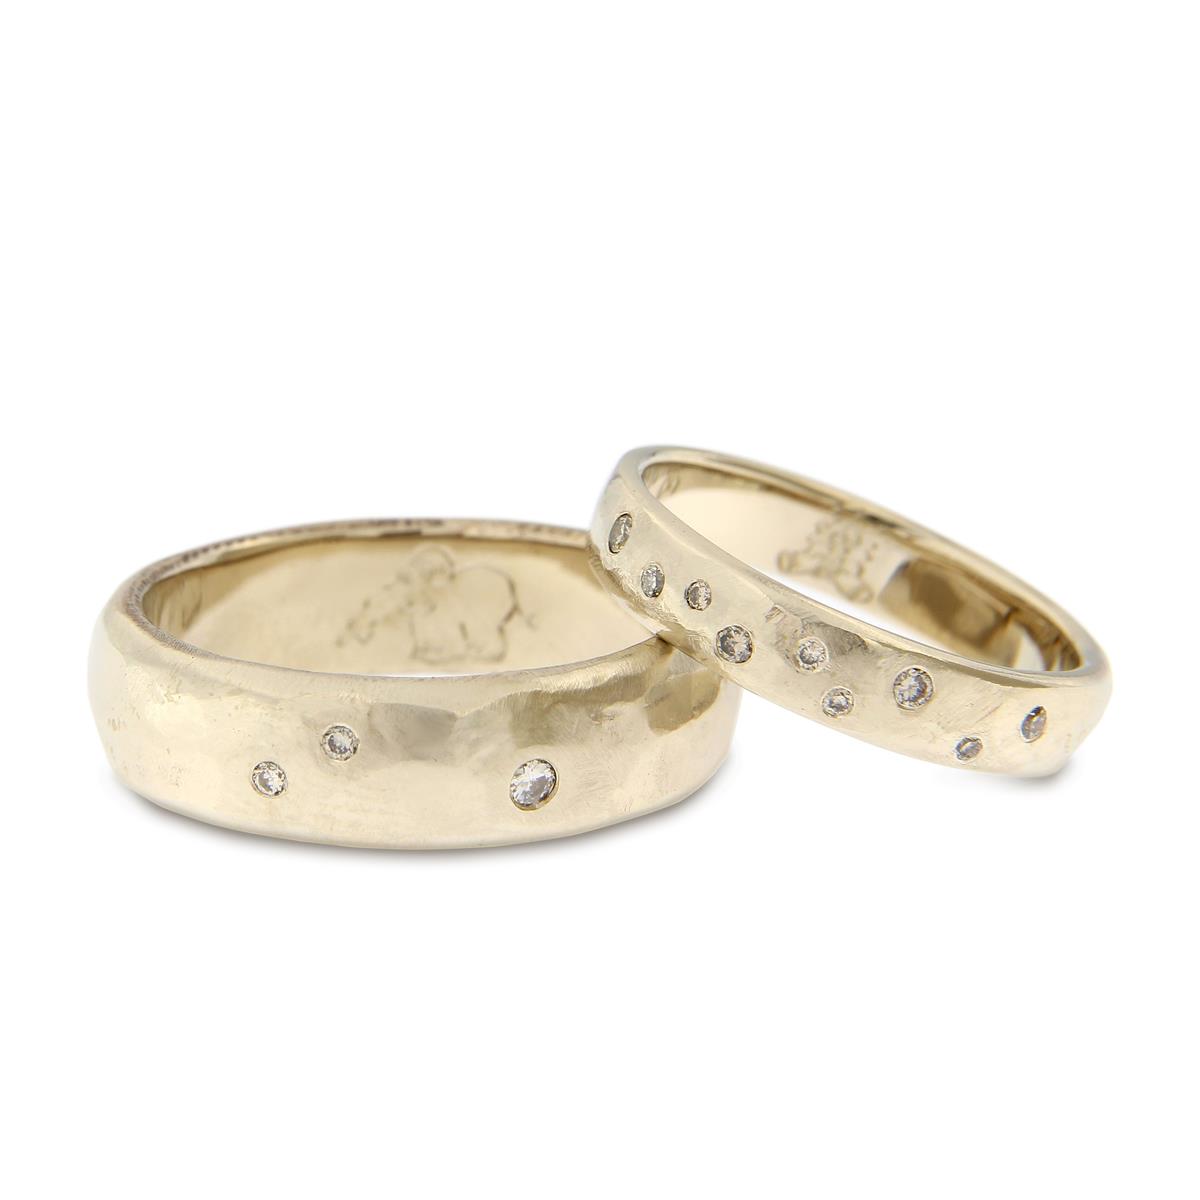 Katie g. Jewellery_Wedding Collection 2019_Eheringe - 18kt natürliches Weißgold - mit braunen Brillanten verwischt gefasst